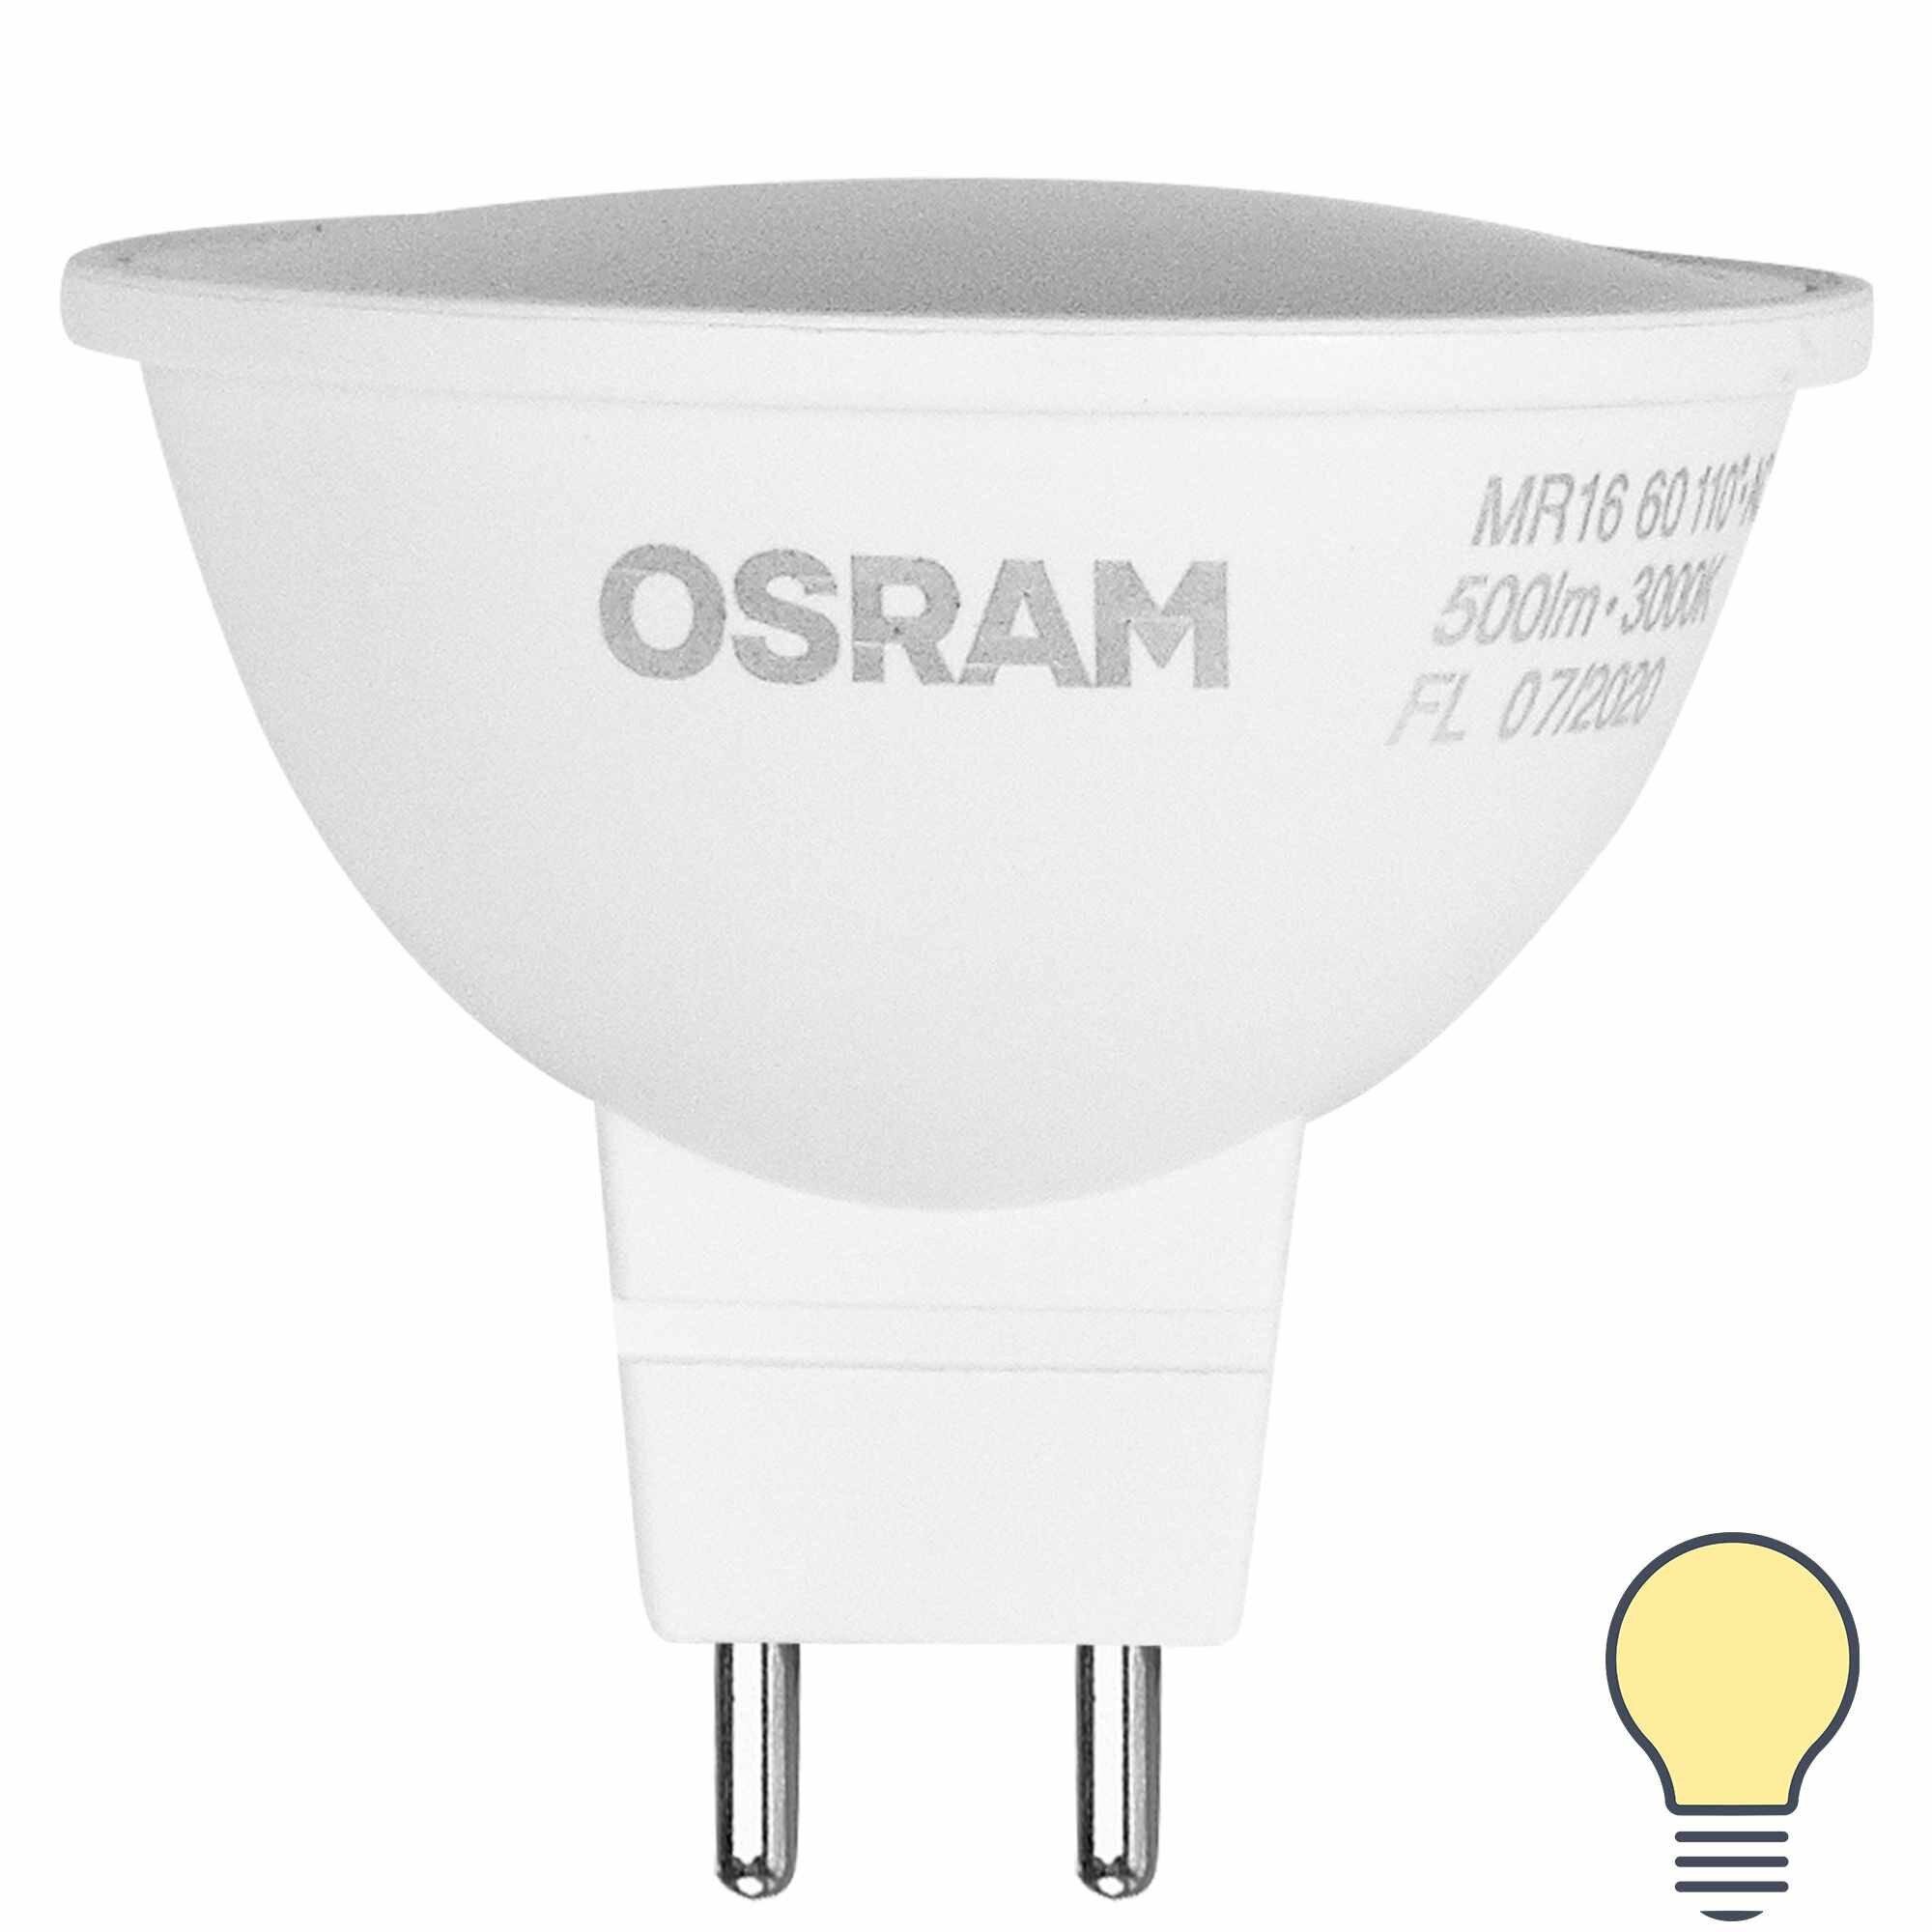 Лампа светодиодная Osram GU5.3 220-240 В 4 Вт спот матовая 300 лм тёплый белый свет